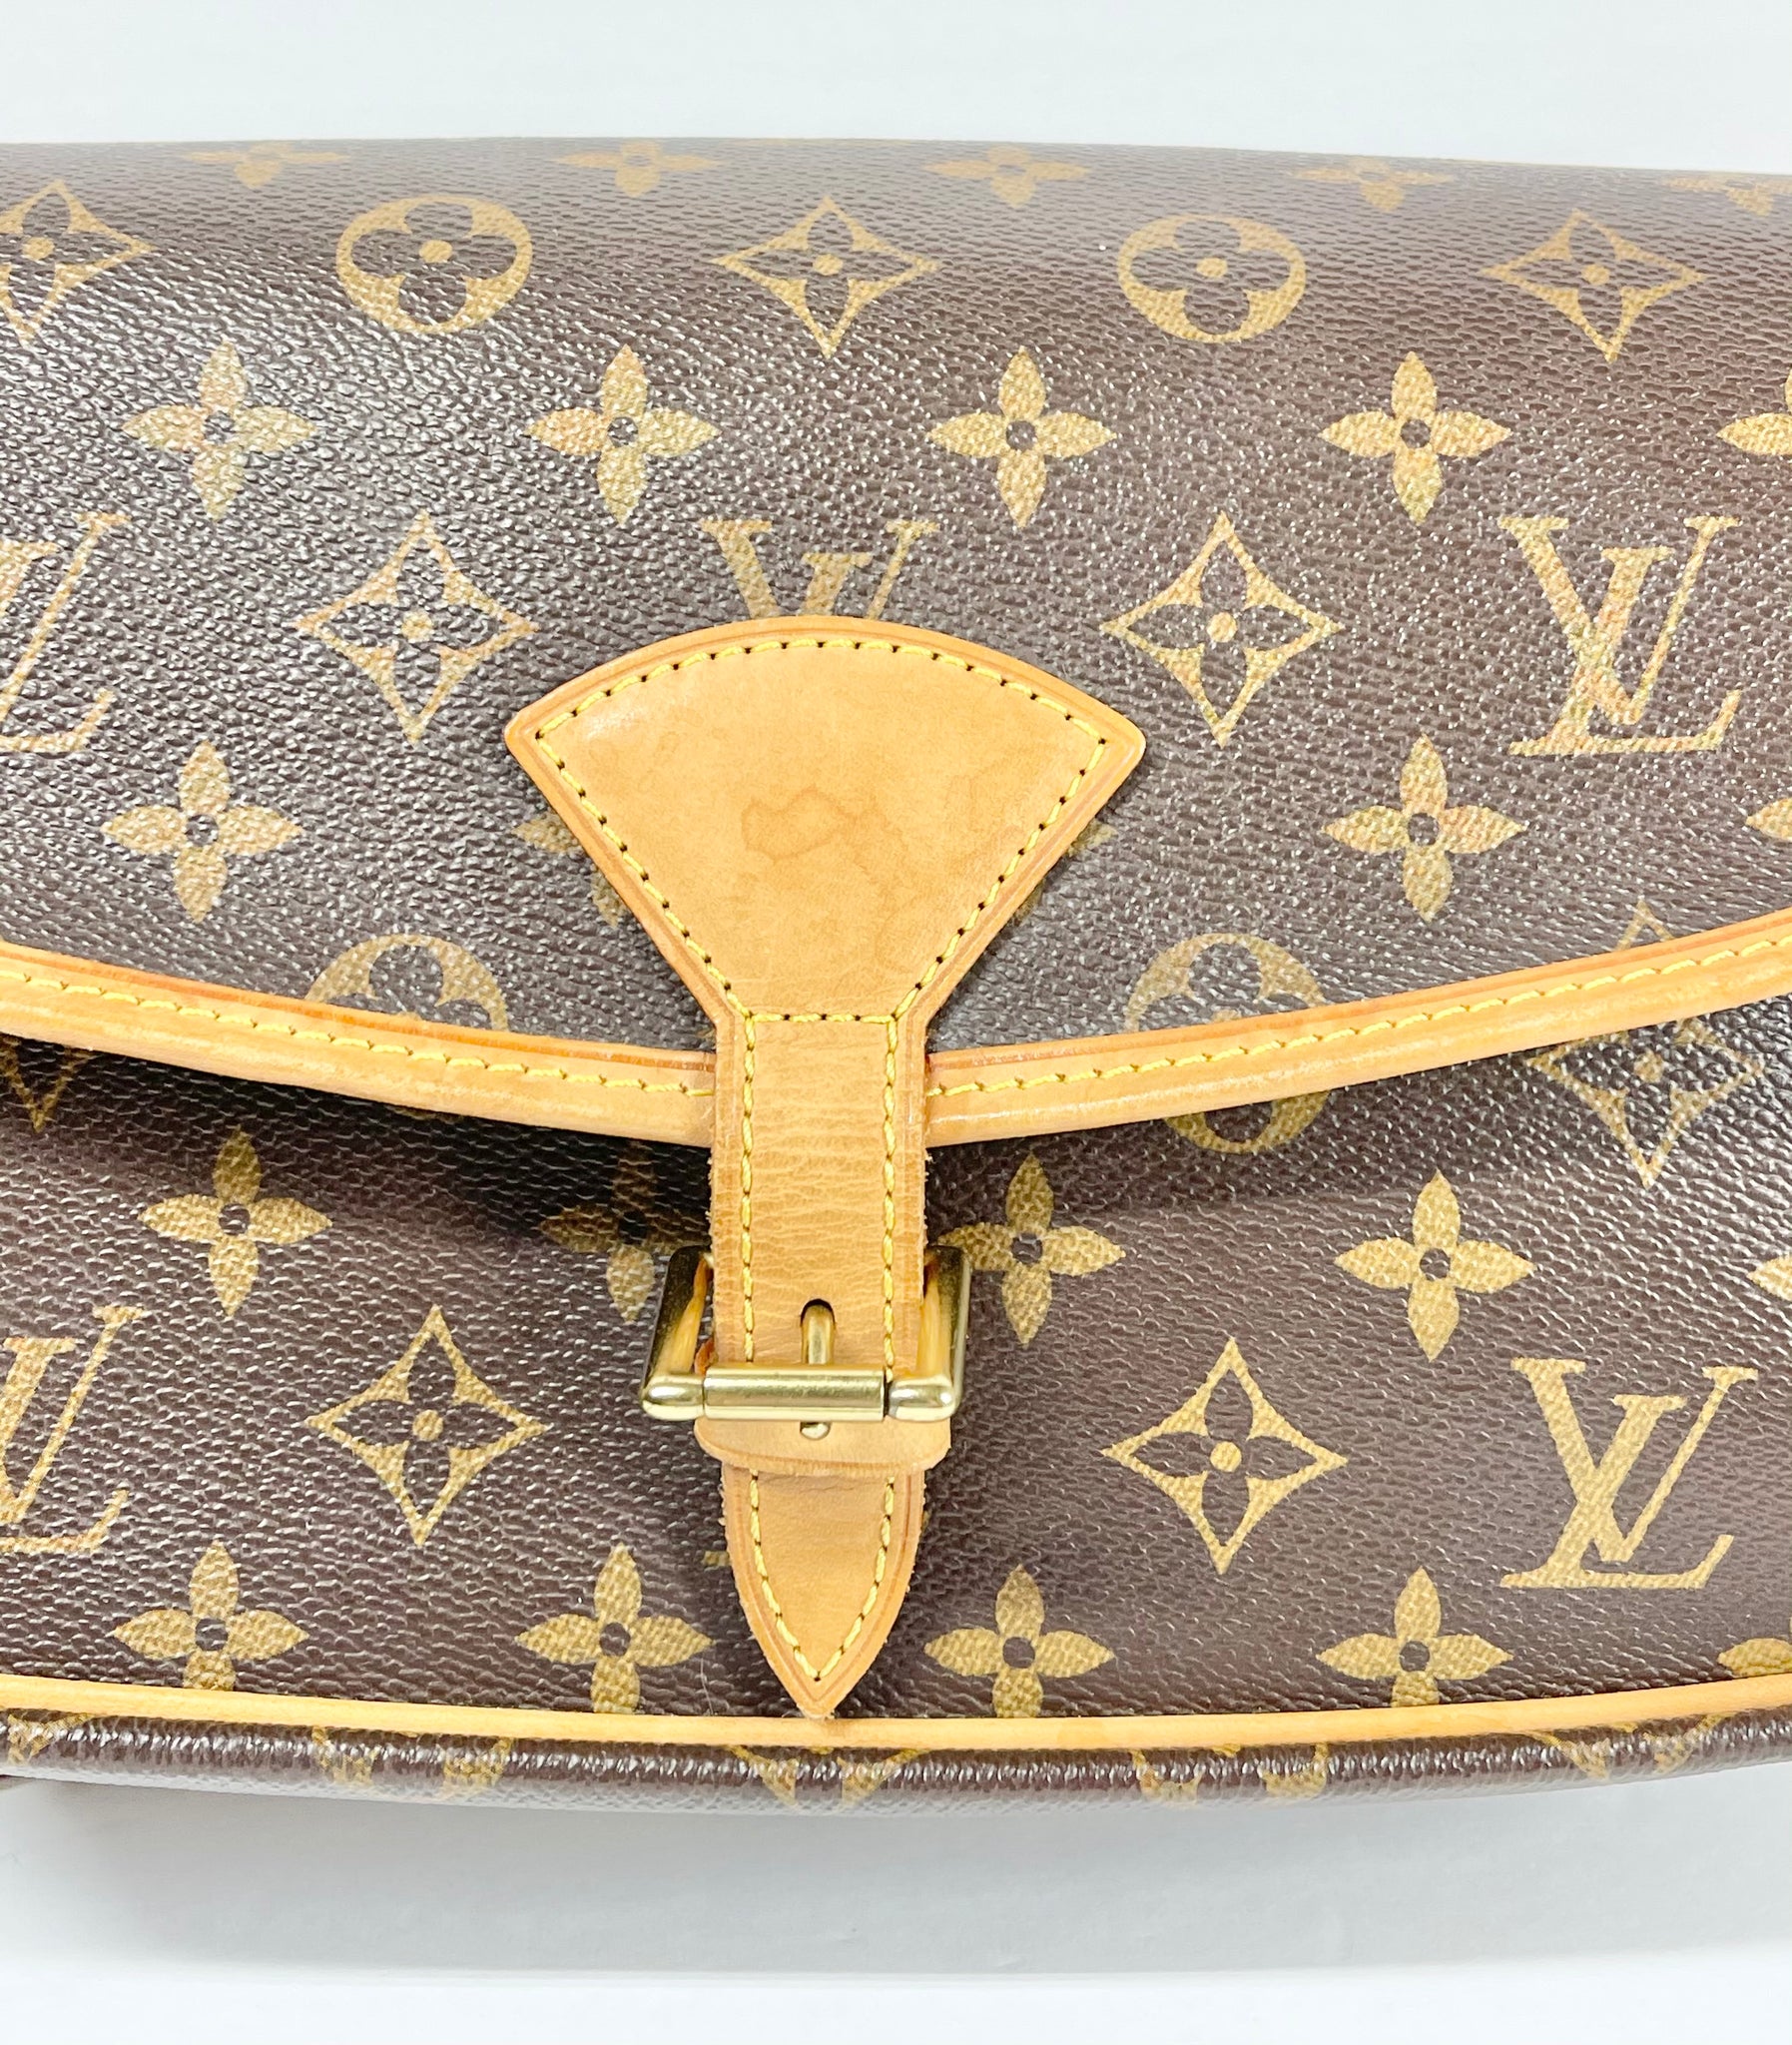 AUTHENTIC Louis Vuitton Sologne Monogram Crossbody PREOWNED (WBA882) – Jj's  Closet, LLC